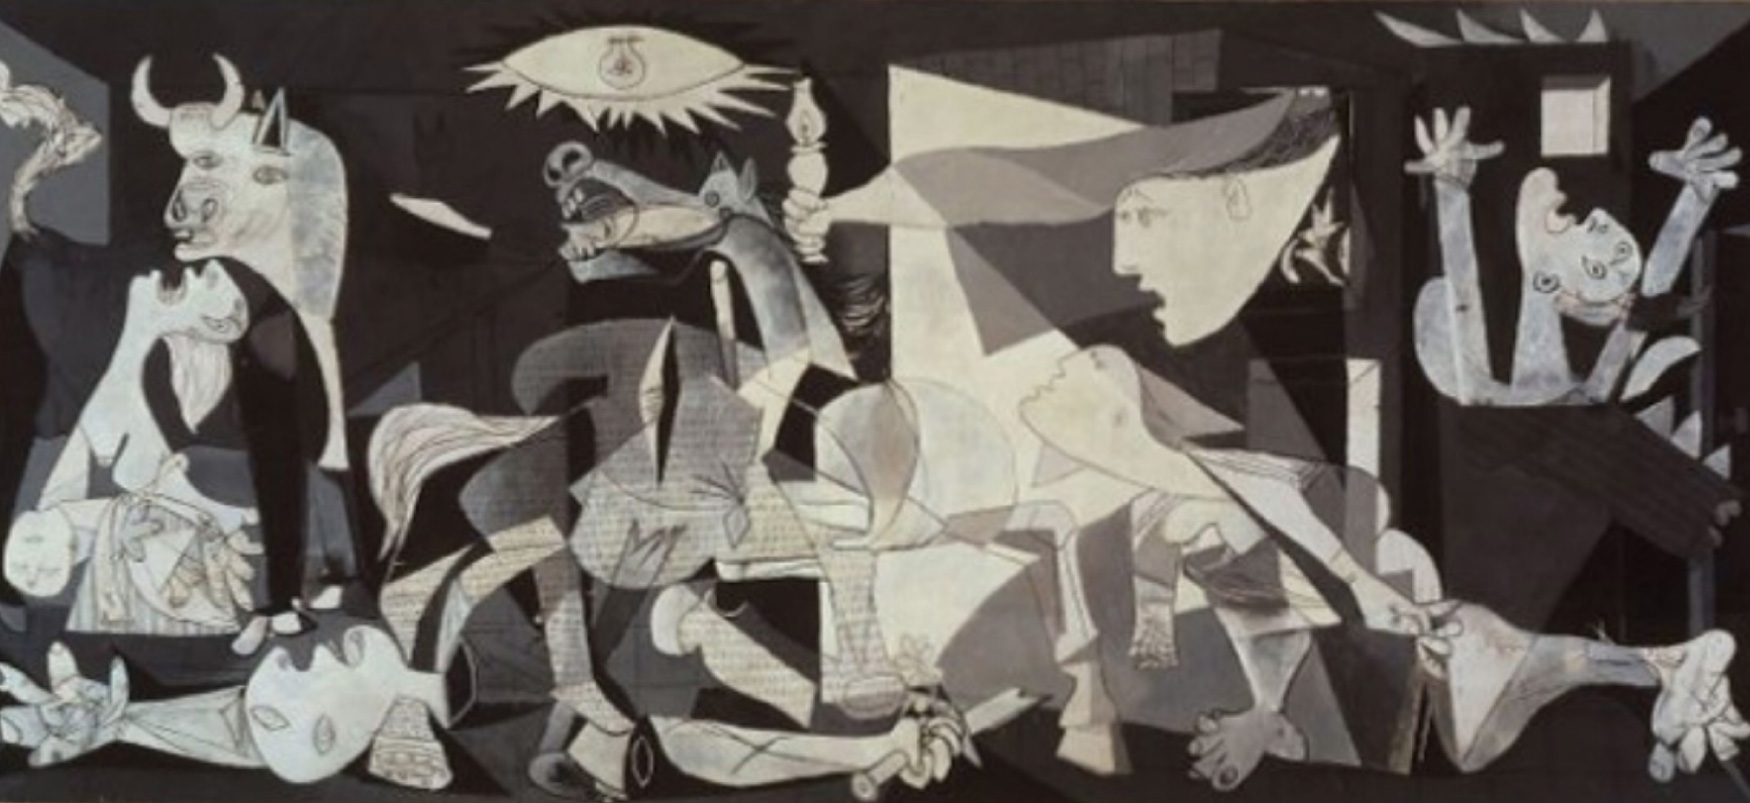 Guernica é uma grande pintura em cinza, preto e branco de Pablo Picasso. As imagens proeminentes na pintura são um cavalo corado, um touro, uma mulher gritando, um bebê morto, um soldado desmembrado e chamas. As proporções distorcidas pelas quais as obras de Picasso são conhecidas estão presentes nesta pintura.